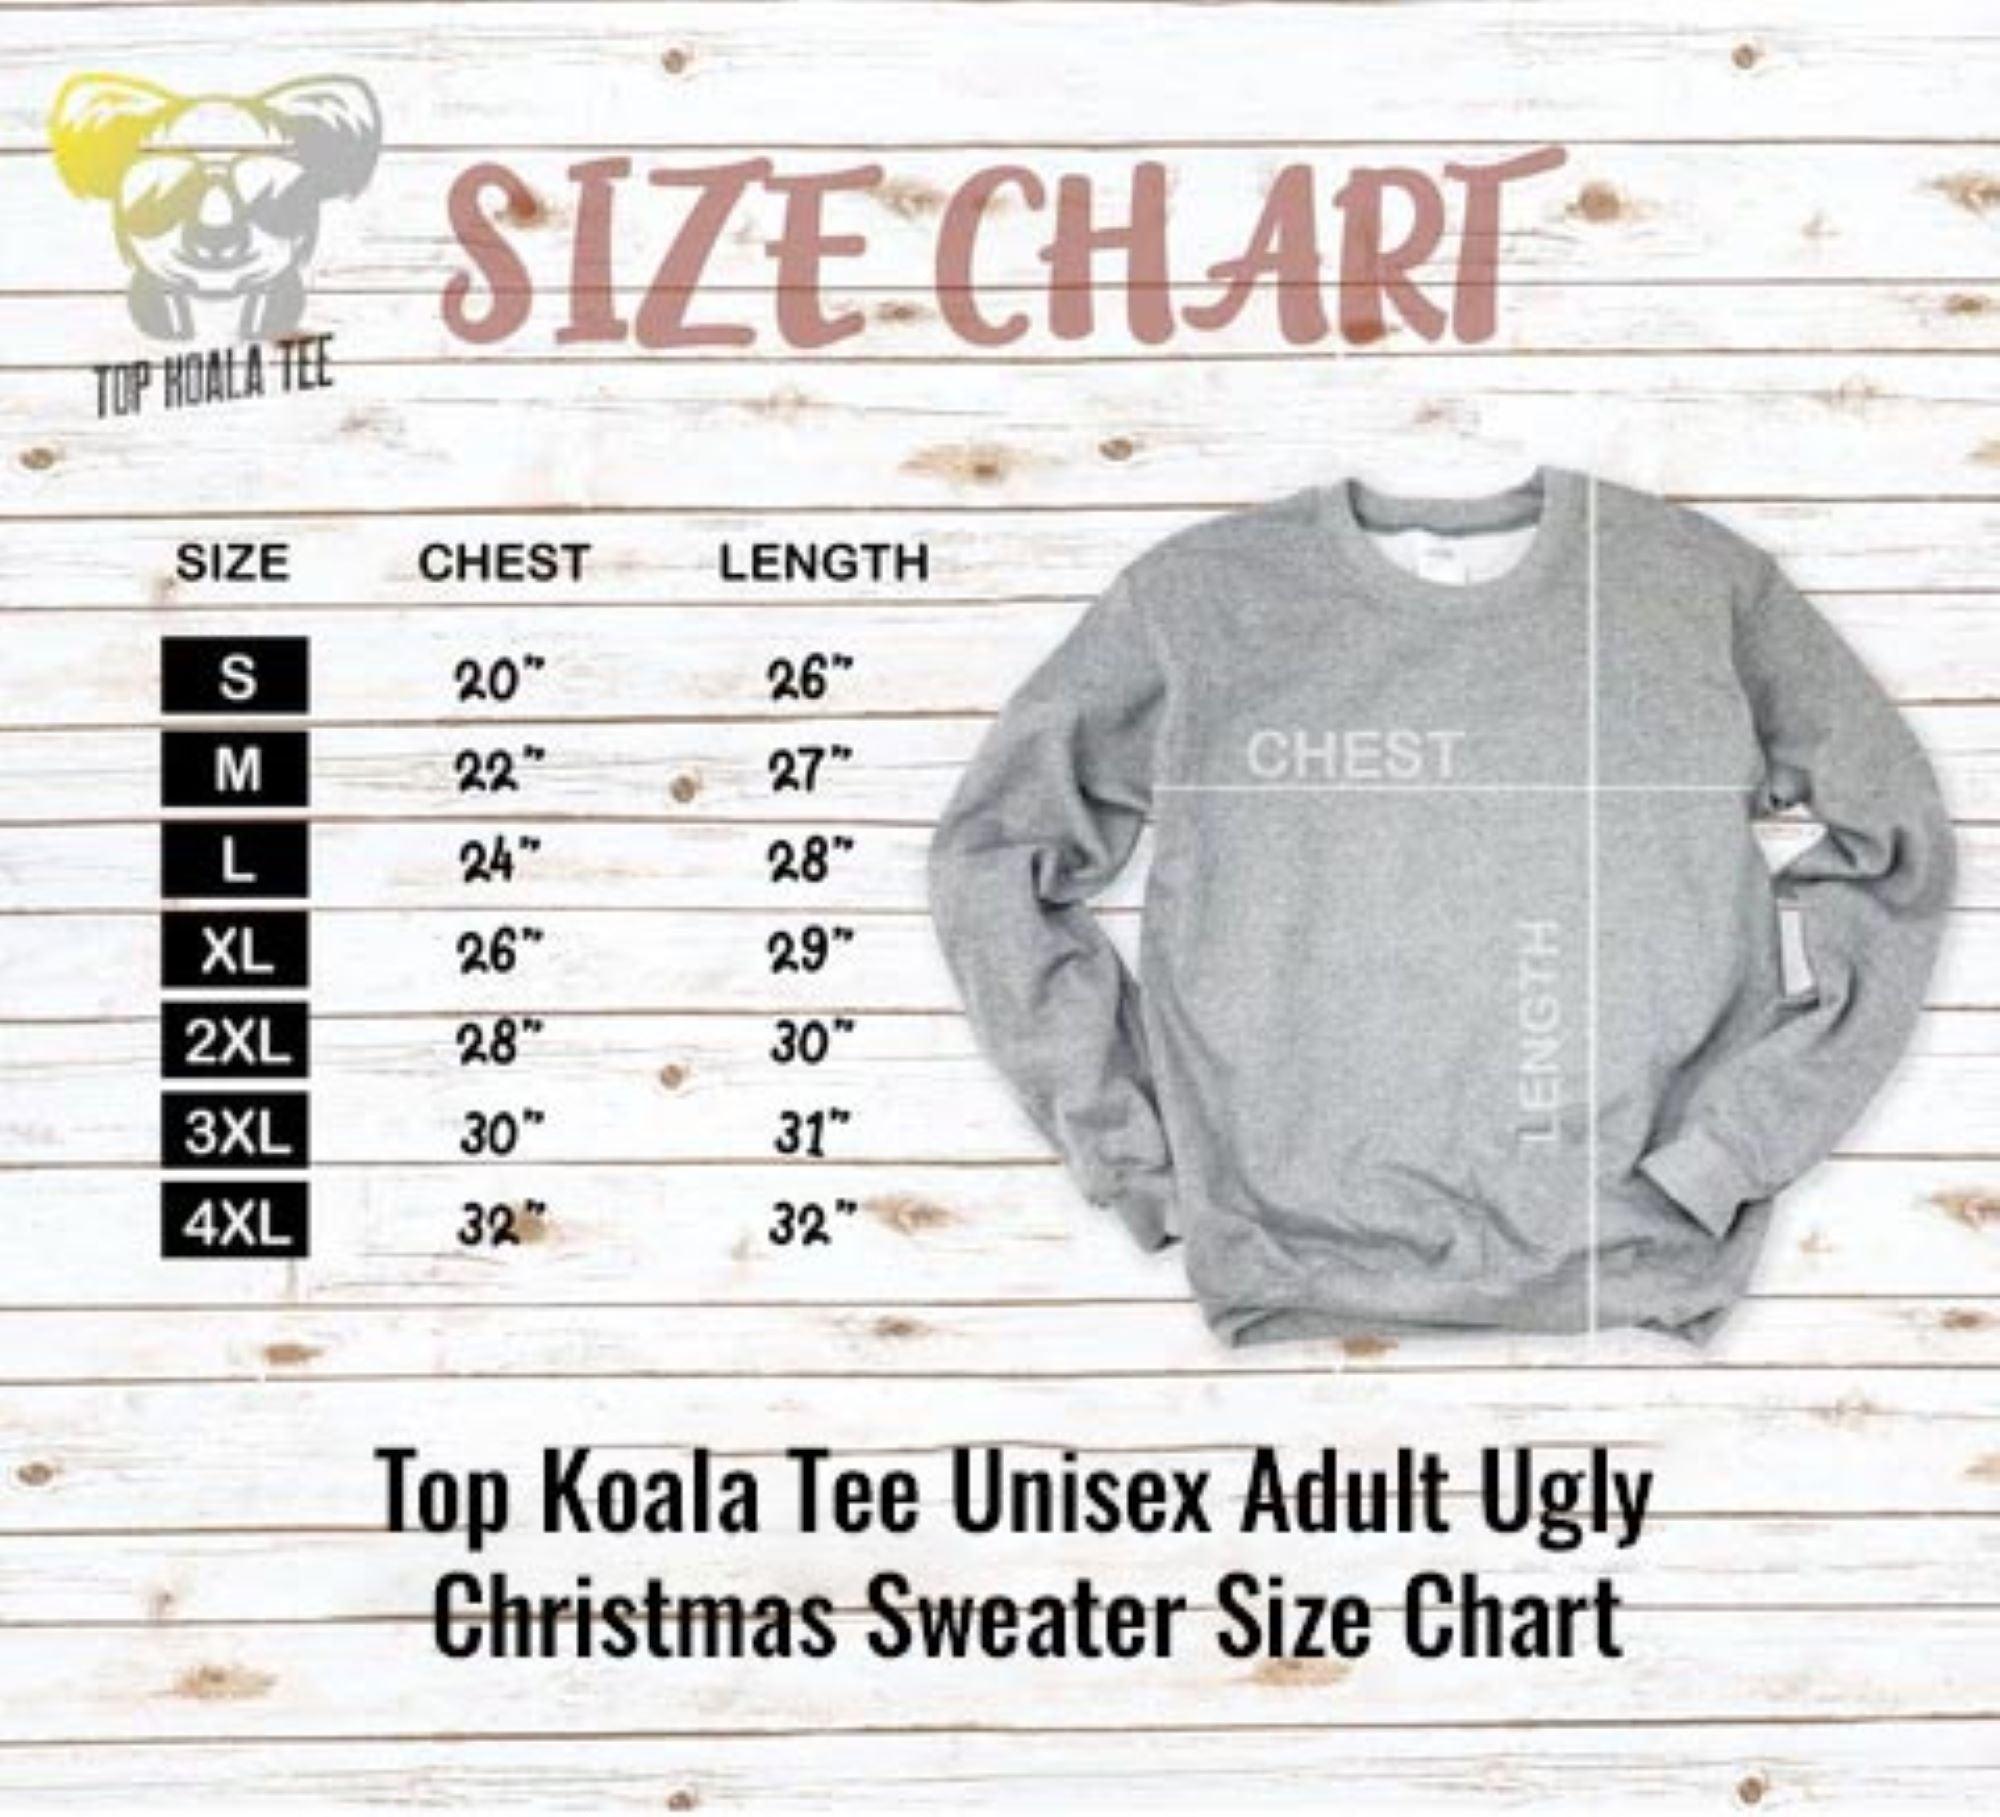 Jewnicorn Unisex Ugly Chanakah Sweater - TopKoalaTee